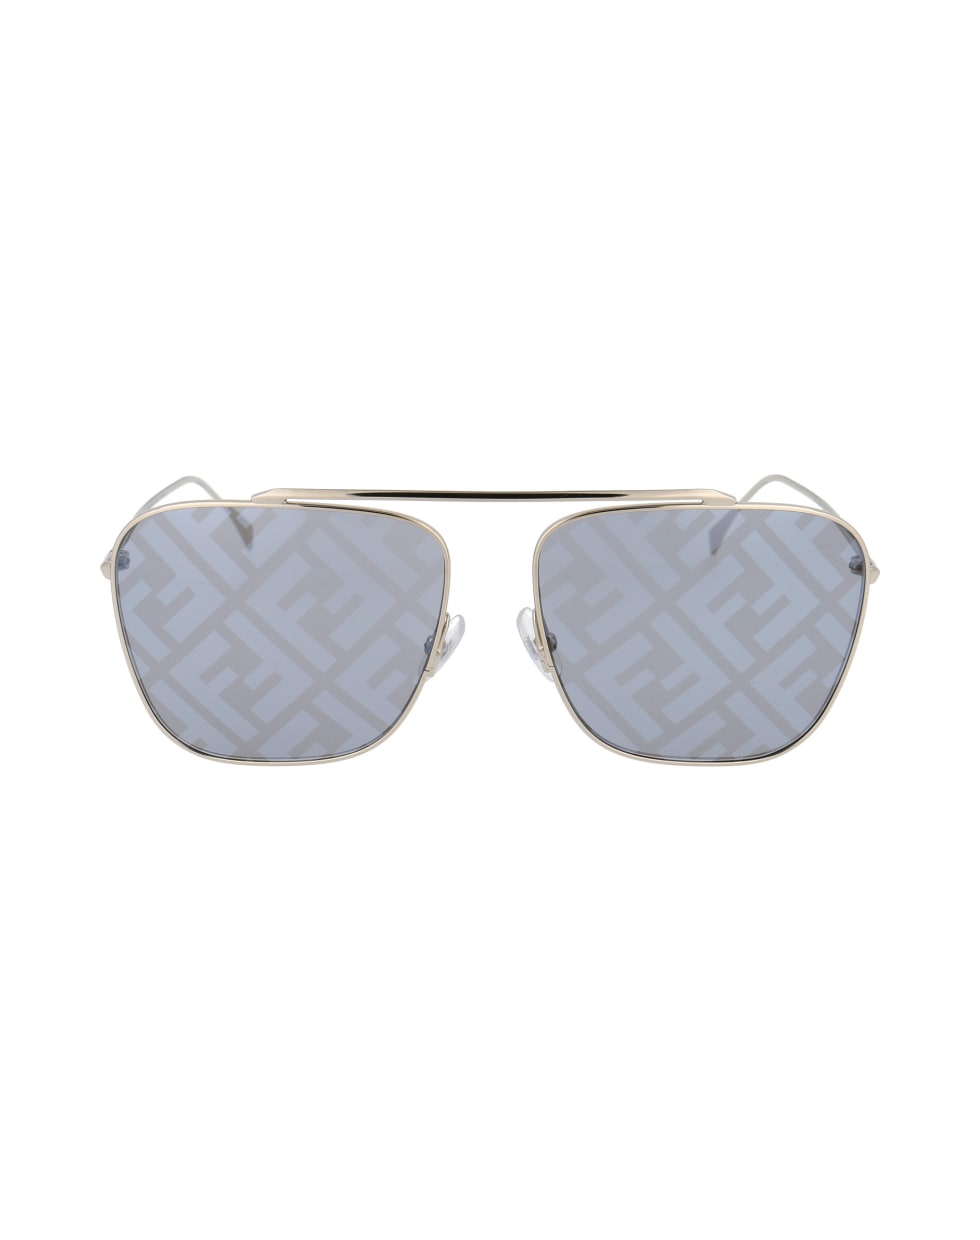 Fendi Eyewear Ff 0406/s Sunglasses - 2F7MD GOLD GREY